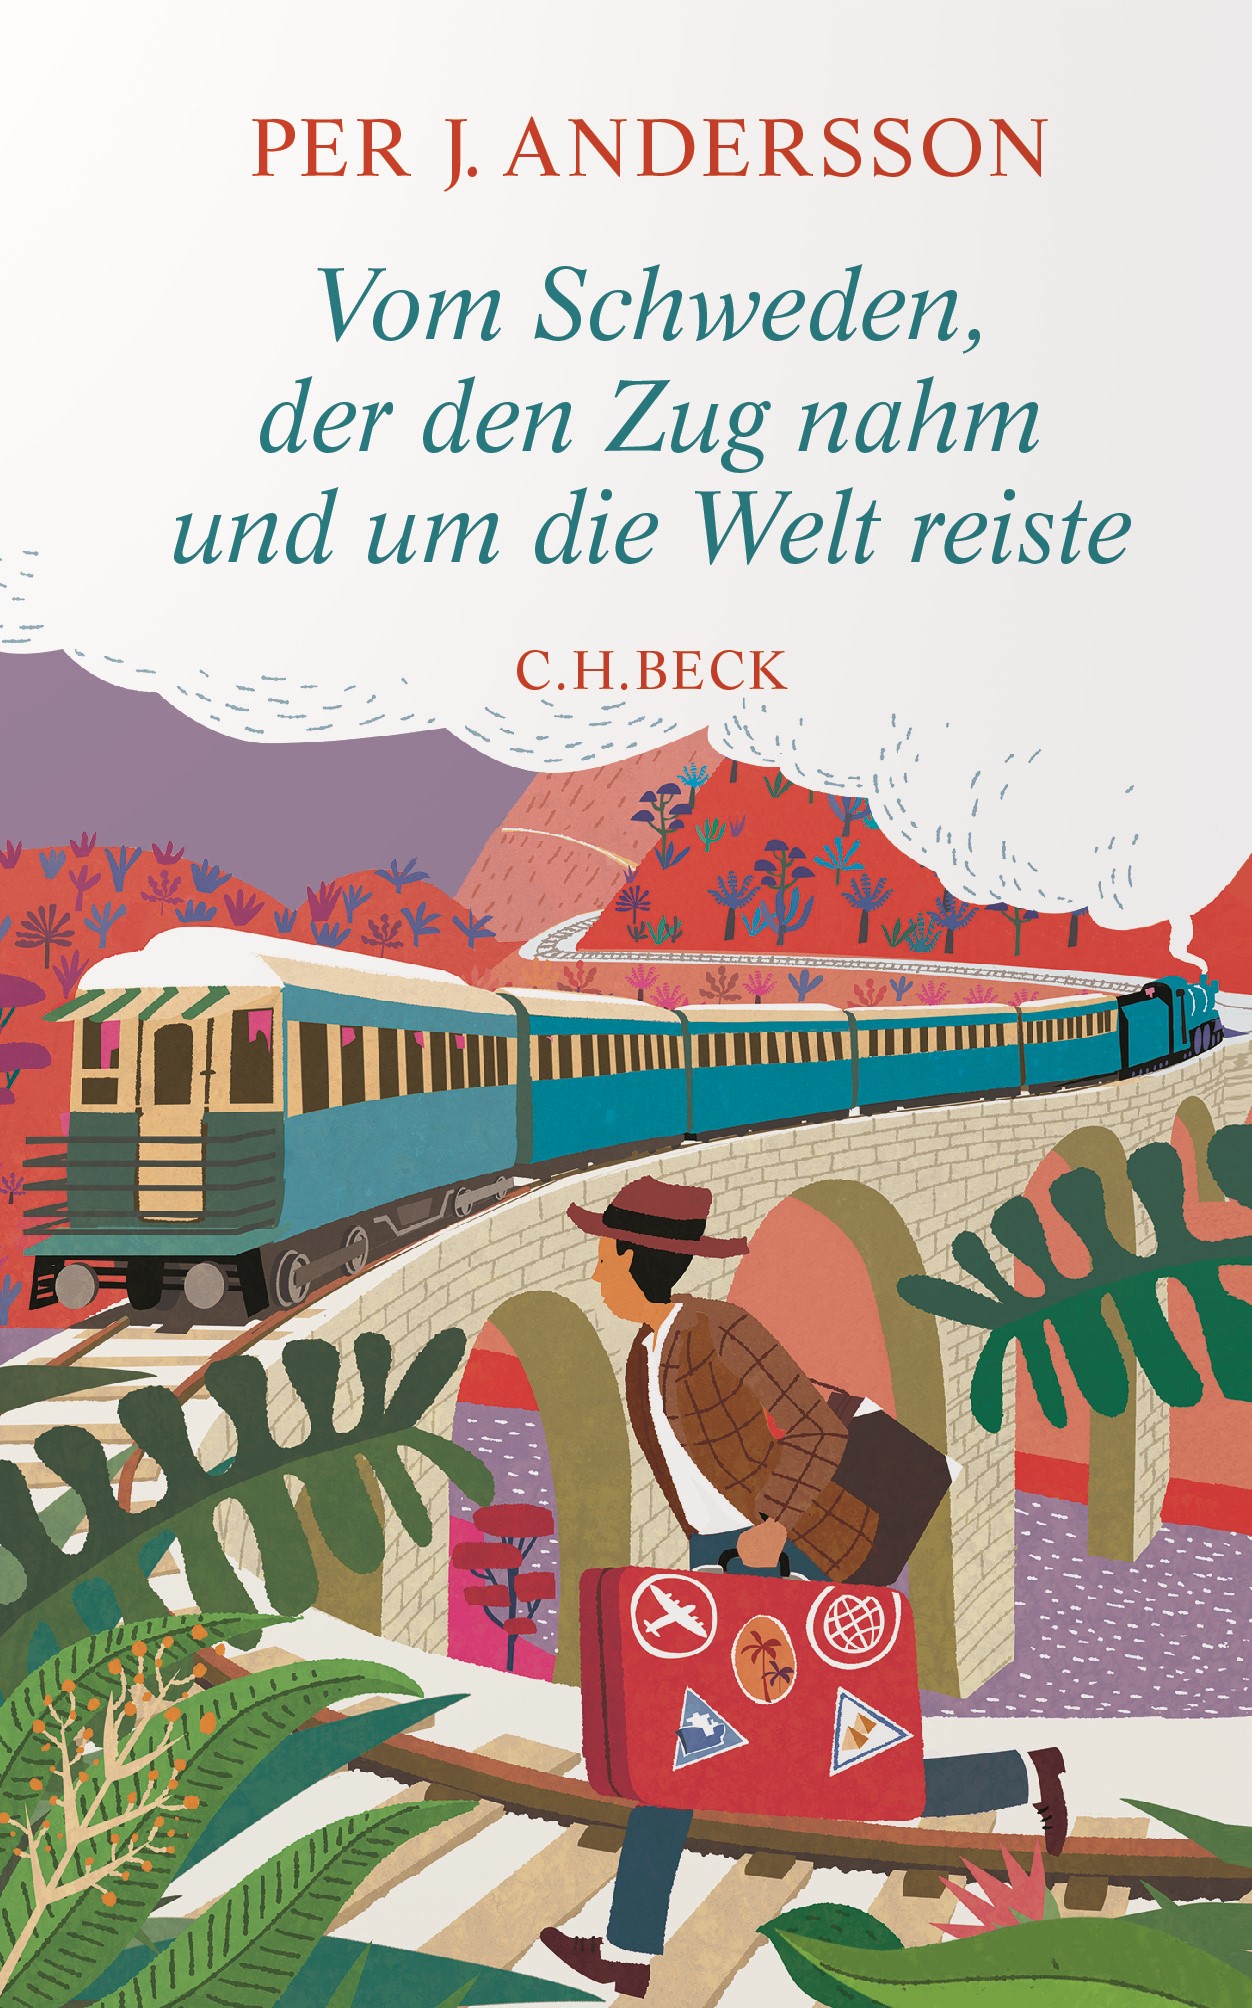 Cover: Andersson, Per J., Vom Schweden, der den Zug nahm und um die Welt reiste